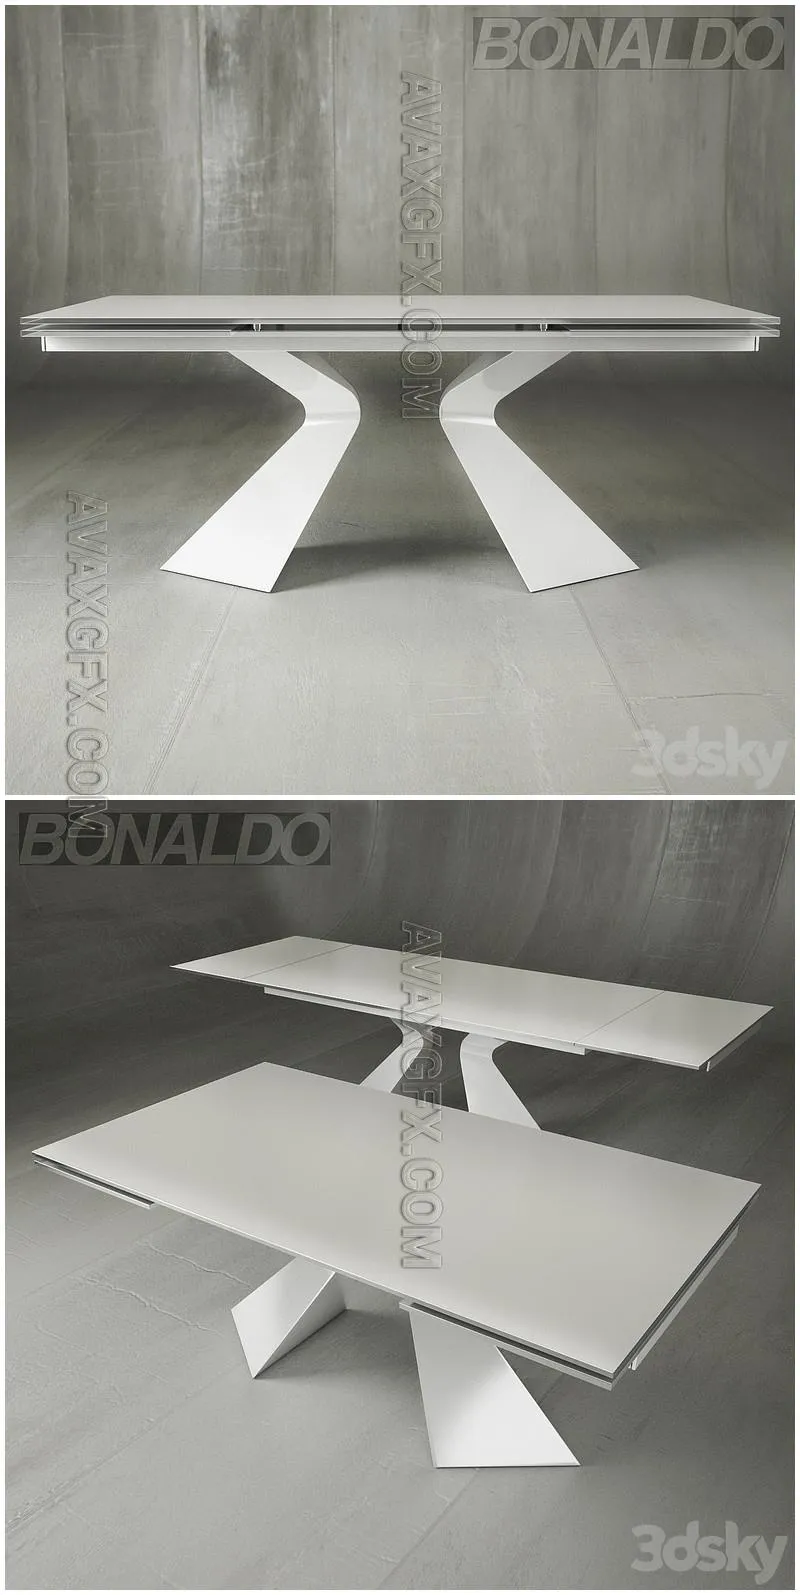 Bonaldo prova - 3D Model